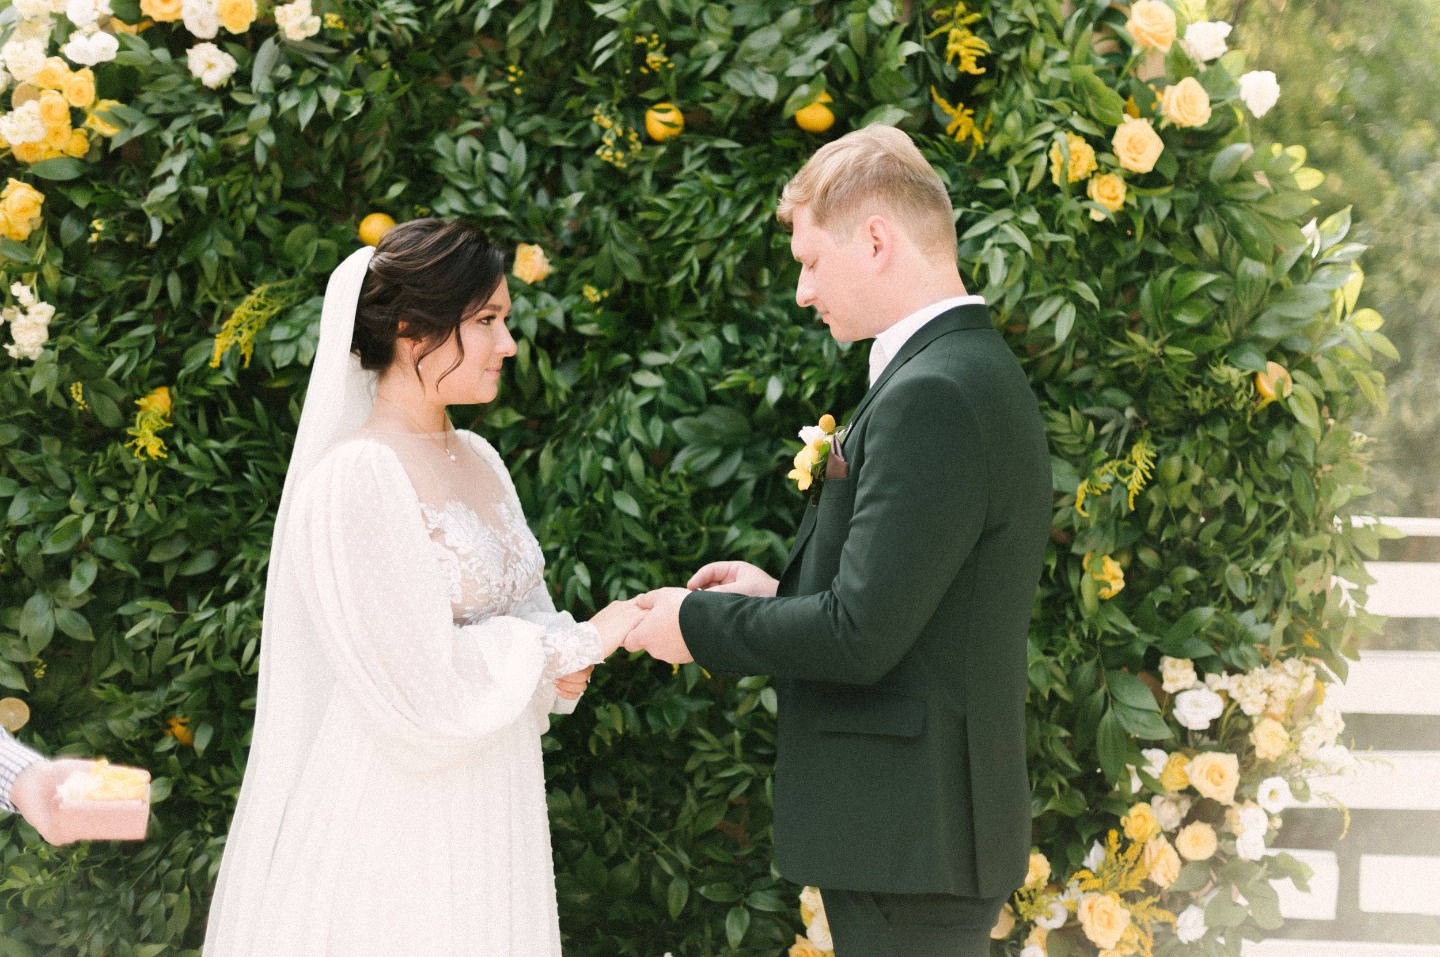 Солнце и любовь: летняя свадьба в желтой гамме